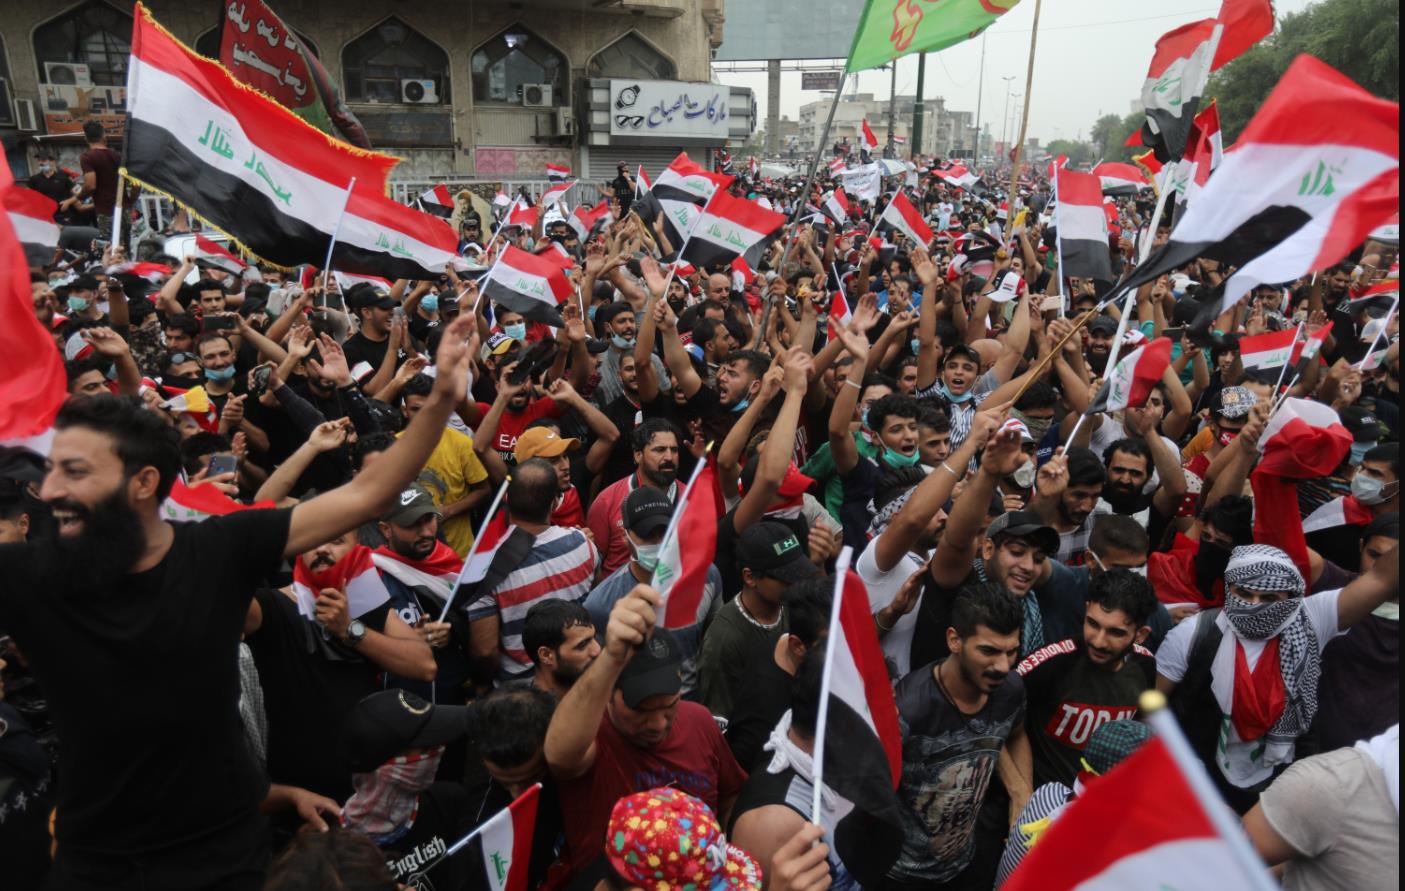 10月25日A示威者在伊拉克巴格達解放廣場參加示威活動C]來源G新華社^